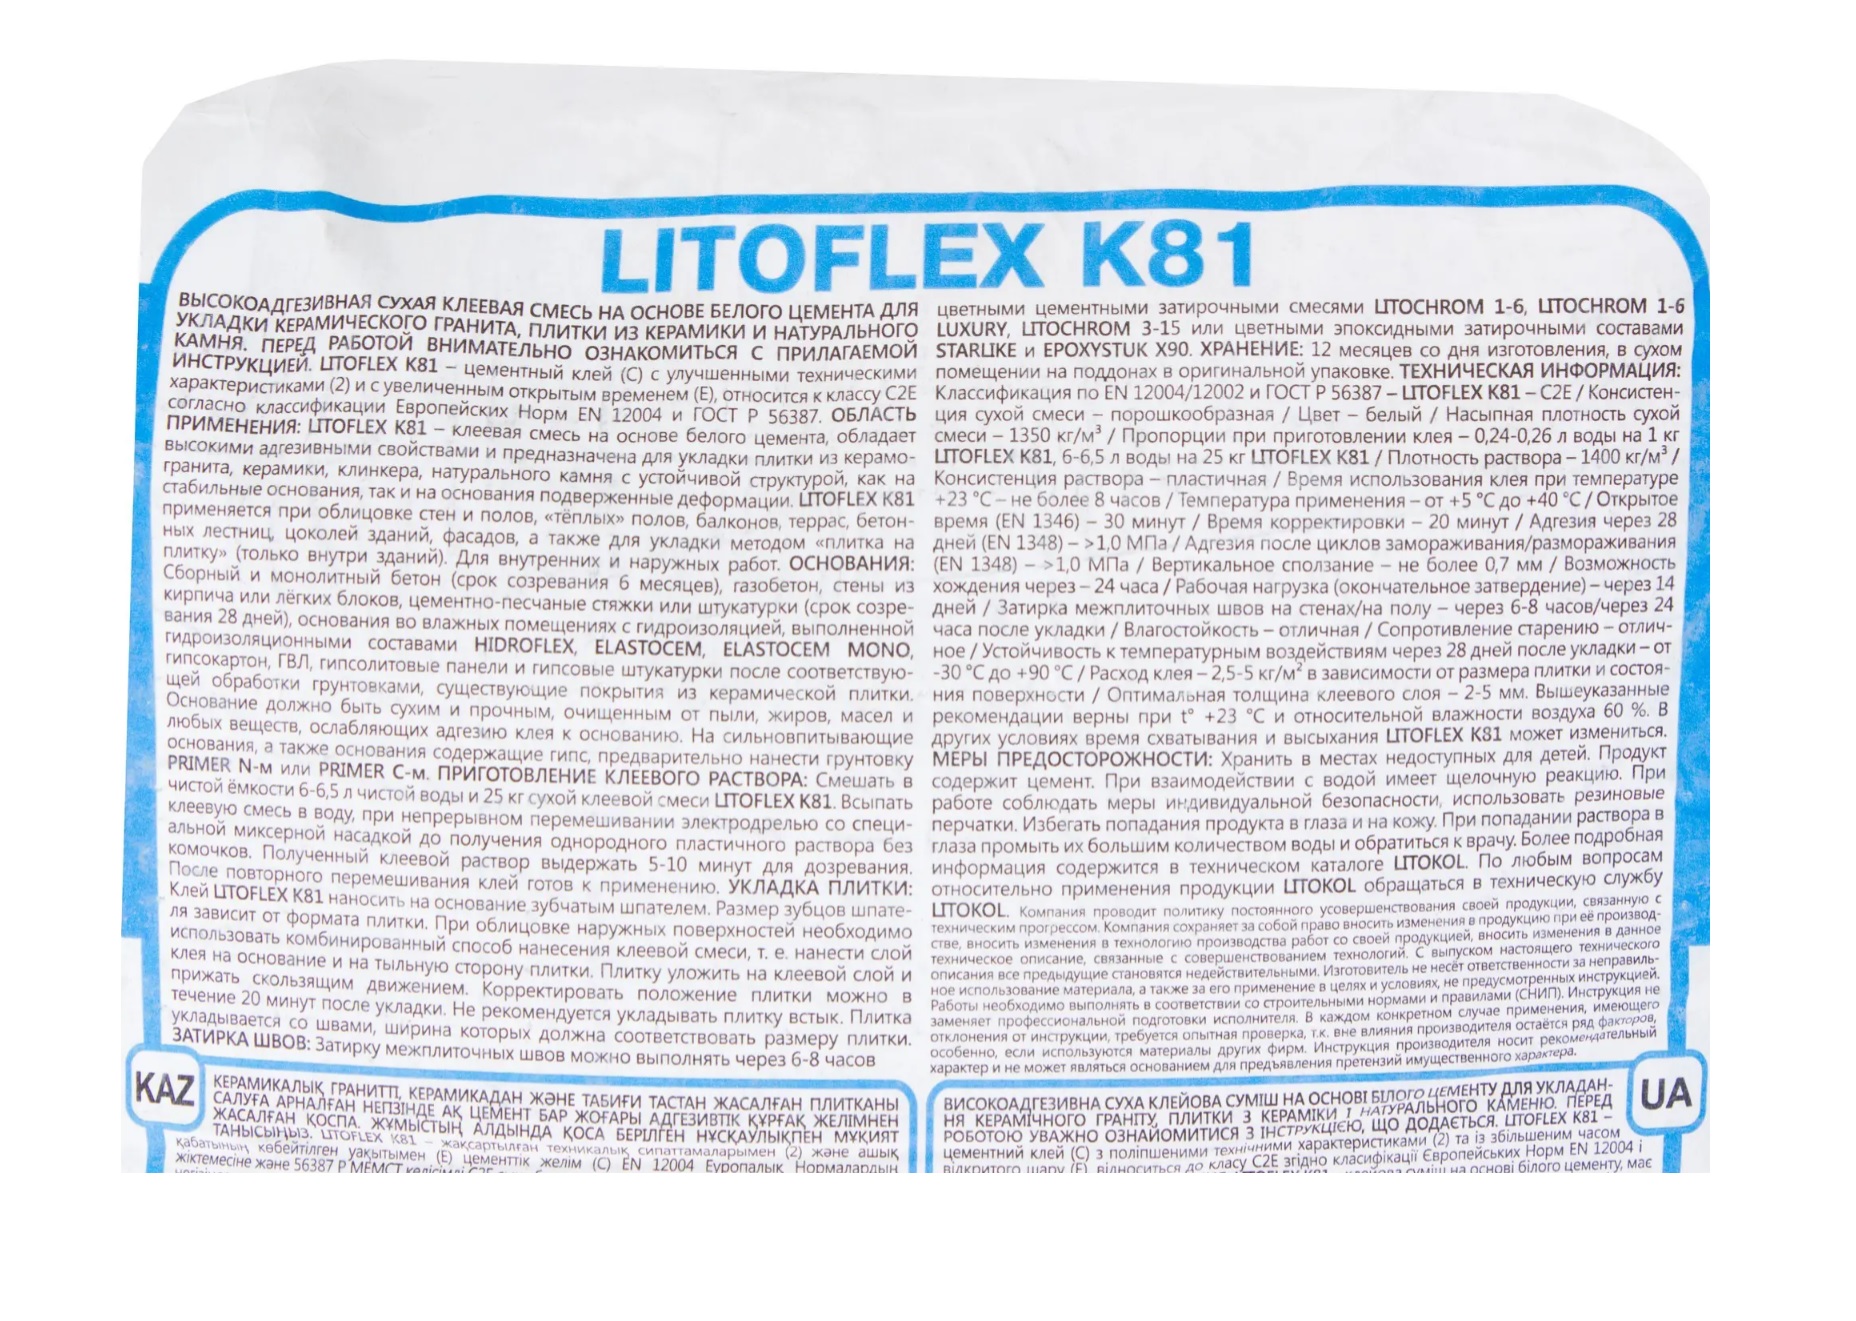    Litoflex K81  25 